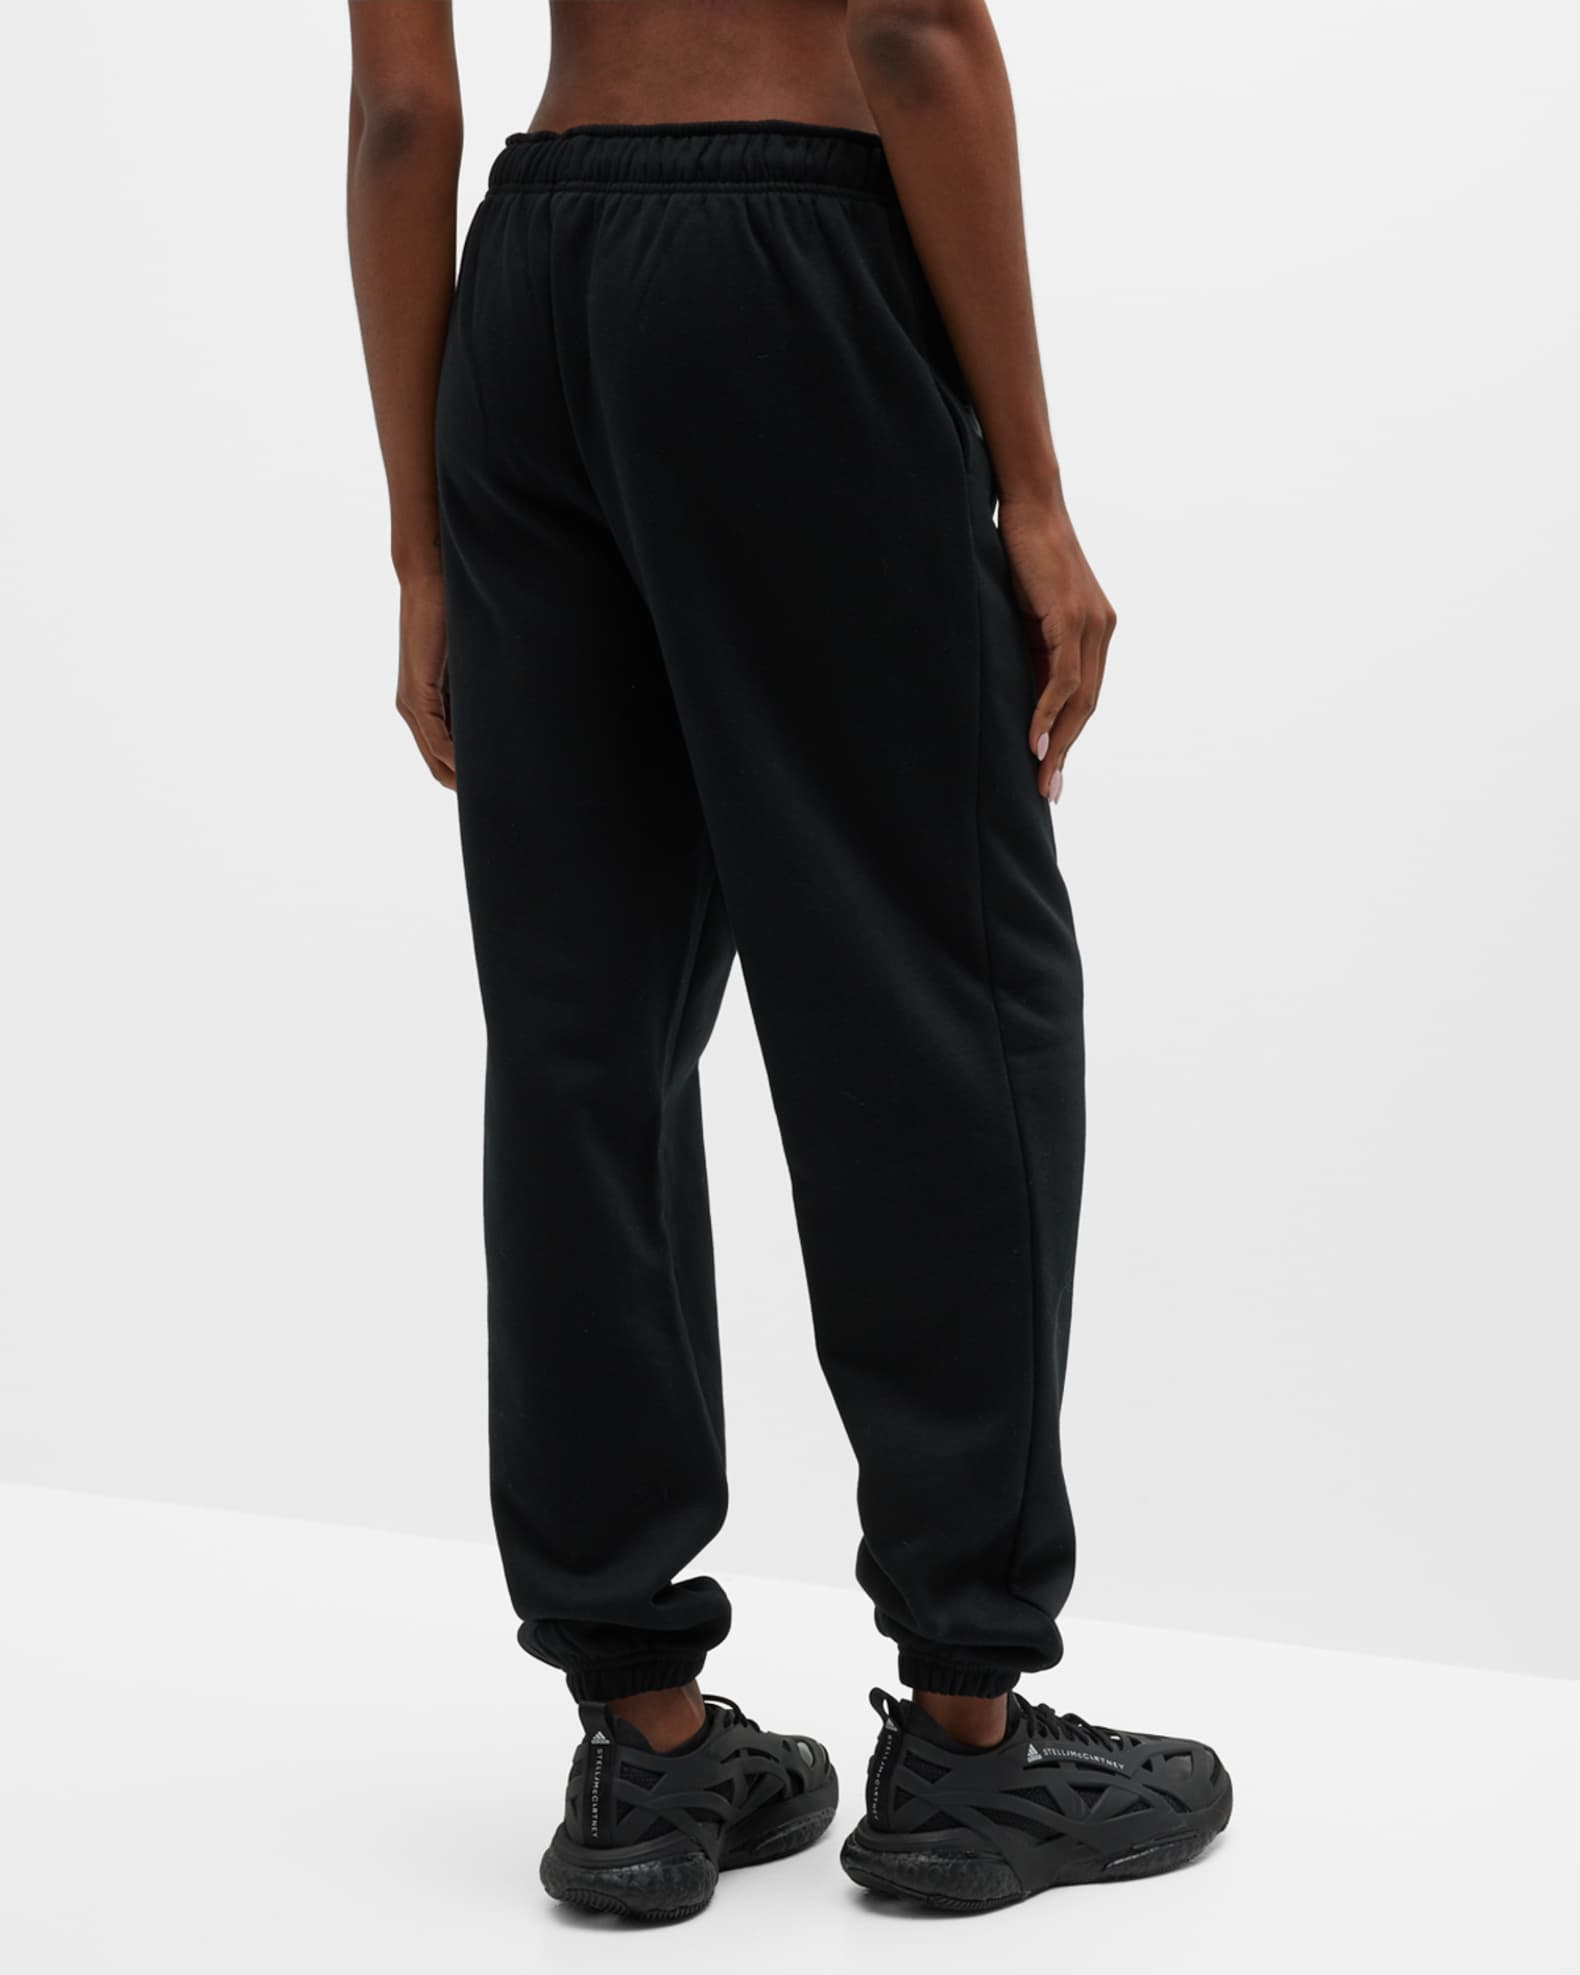 Alo Yoga Accolade Fleece Sweatpants | Neiman Marcus